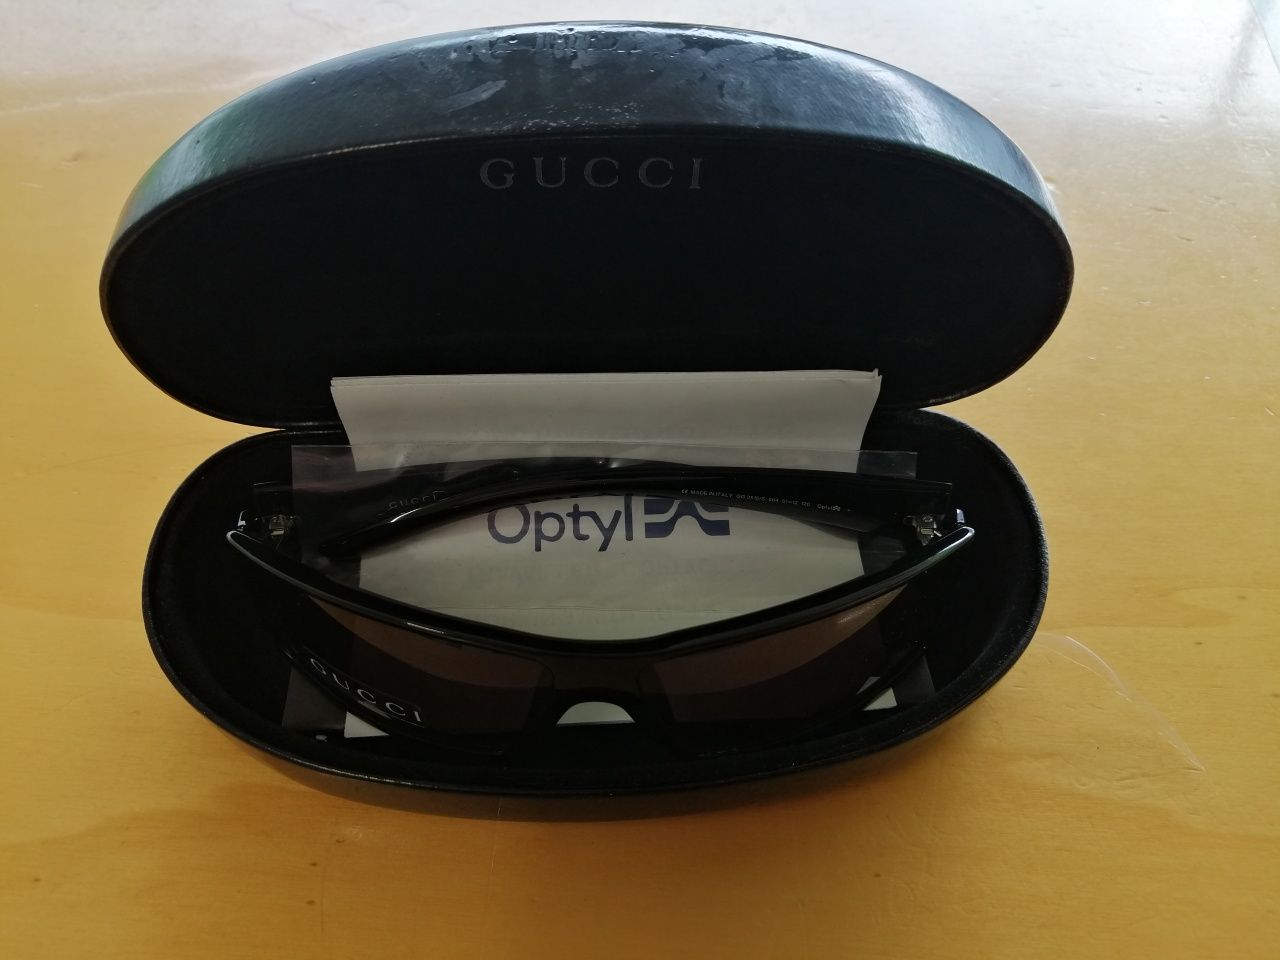 Óculos de sol Gucci Novos